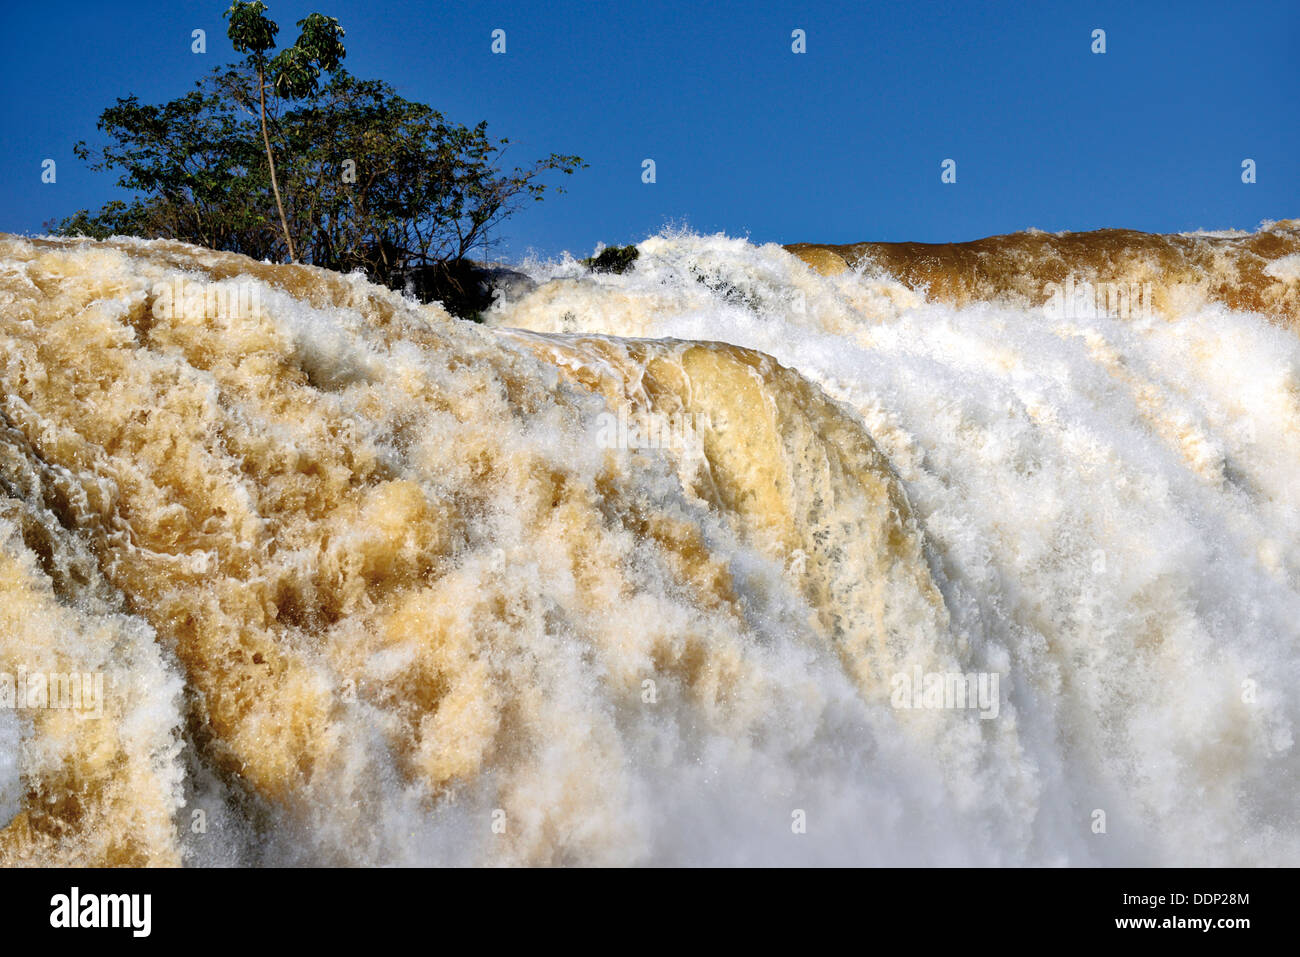 Brésil, São Paulo : Iguassu Falls avec enregistrer les niveaux d'eau après de fortes pluies Banque D'Images